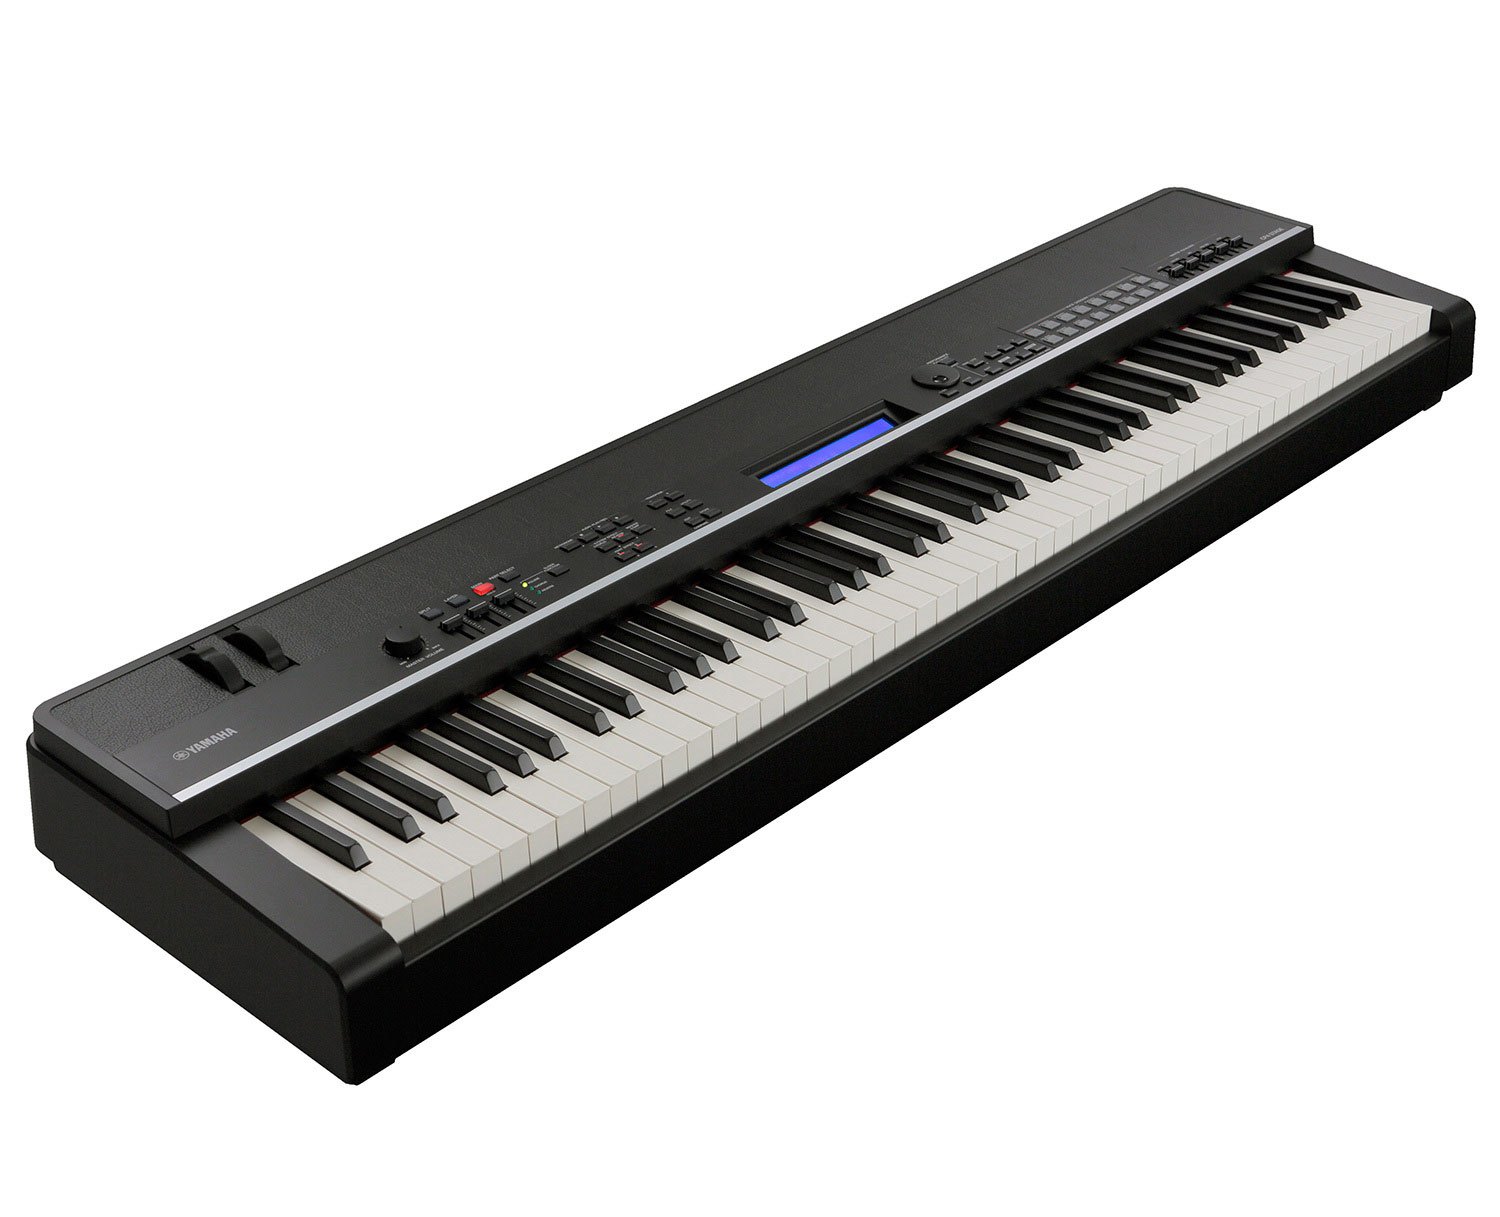 ヤマハ | CP4/40 STAGE - ステージピアノ/ステージキーボード - 概要